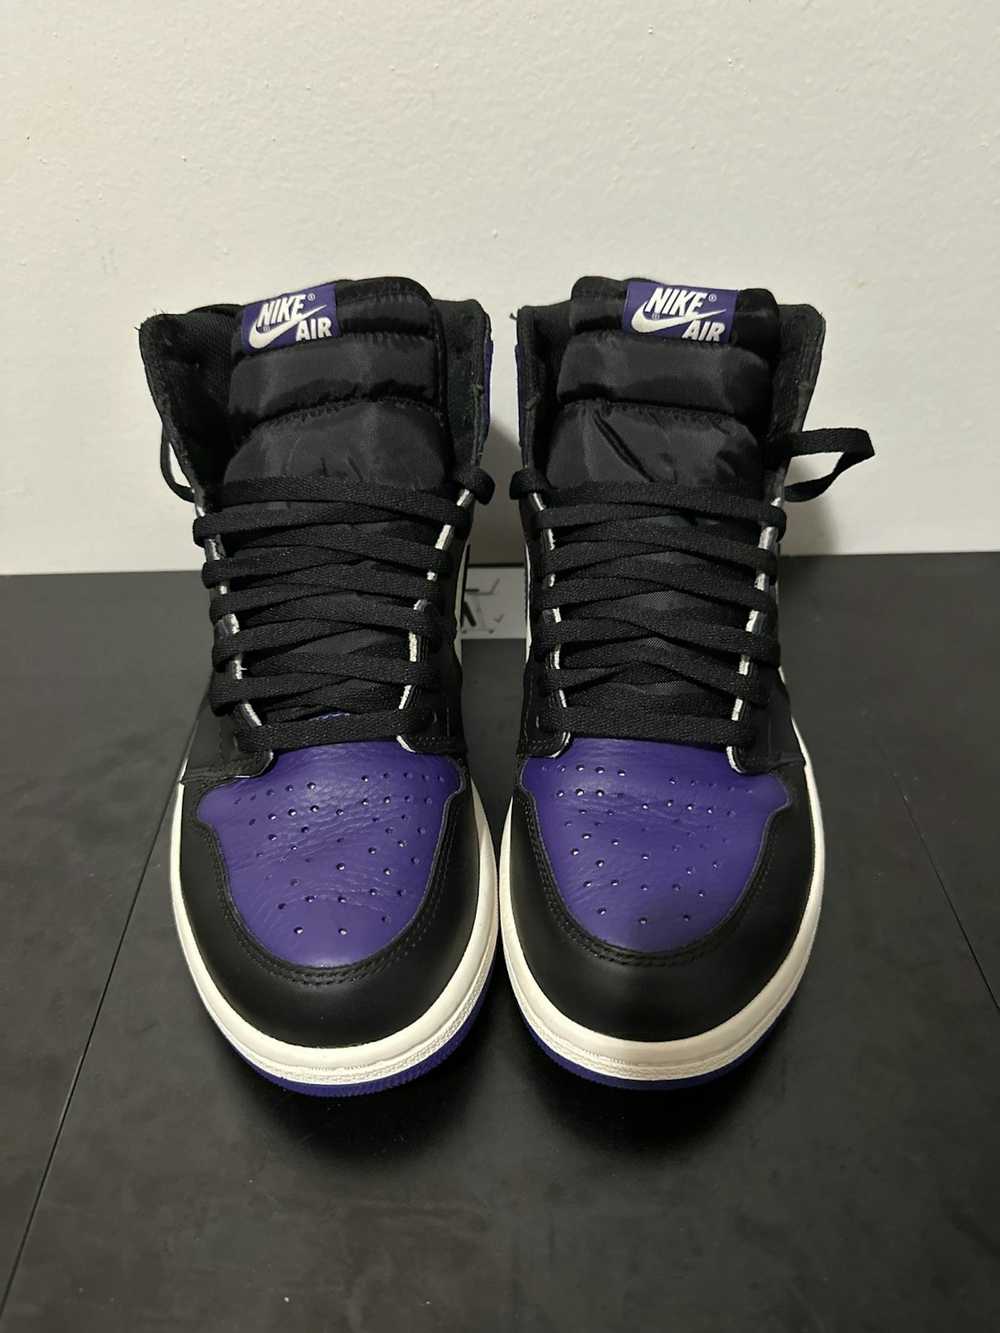 Jordan Brand Air Jordan 1 retro court purple - image 3